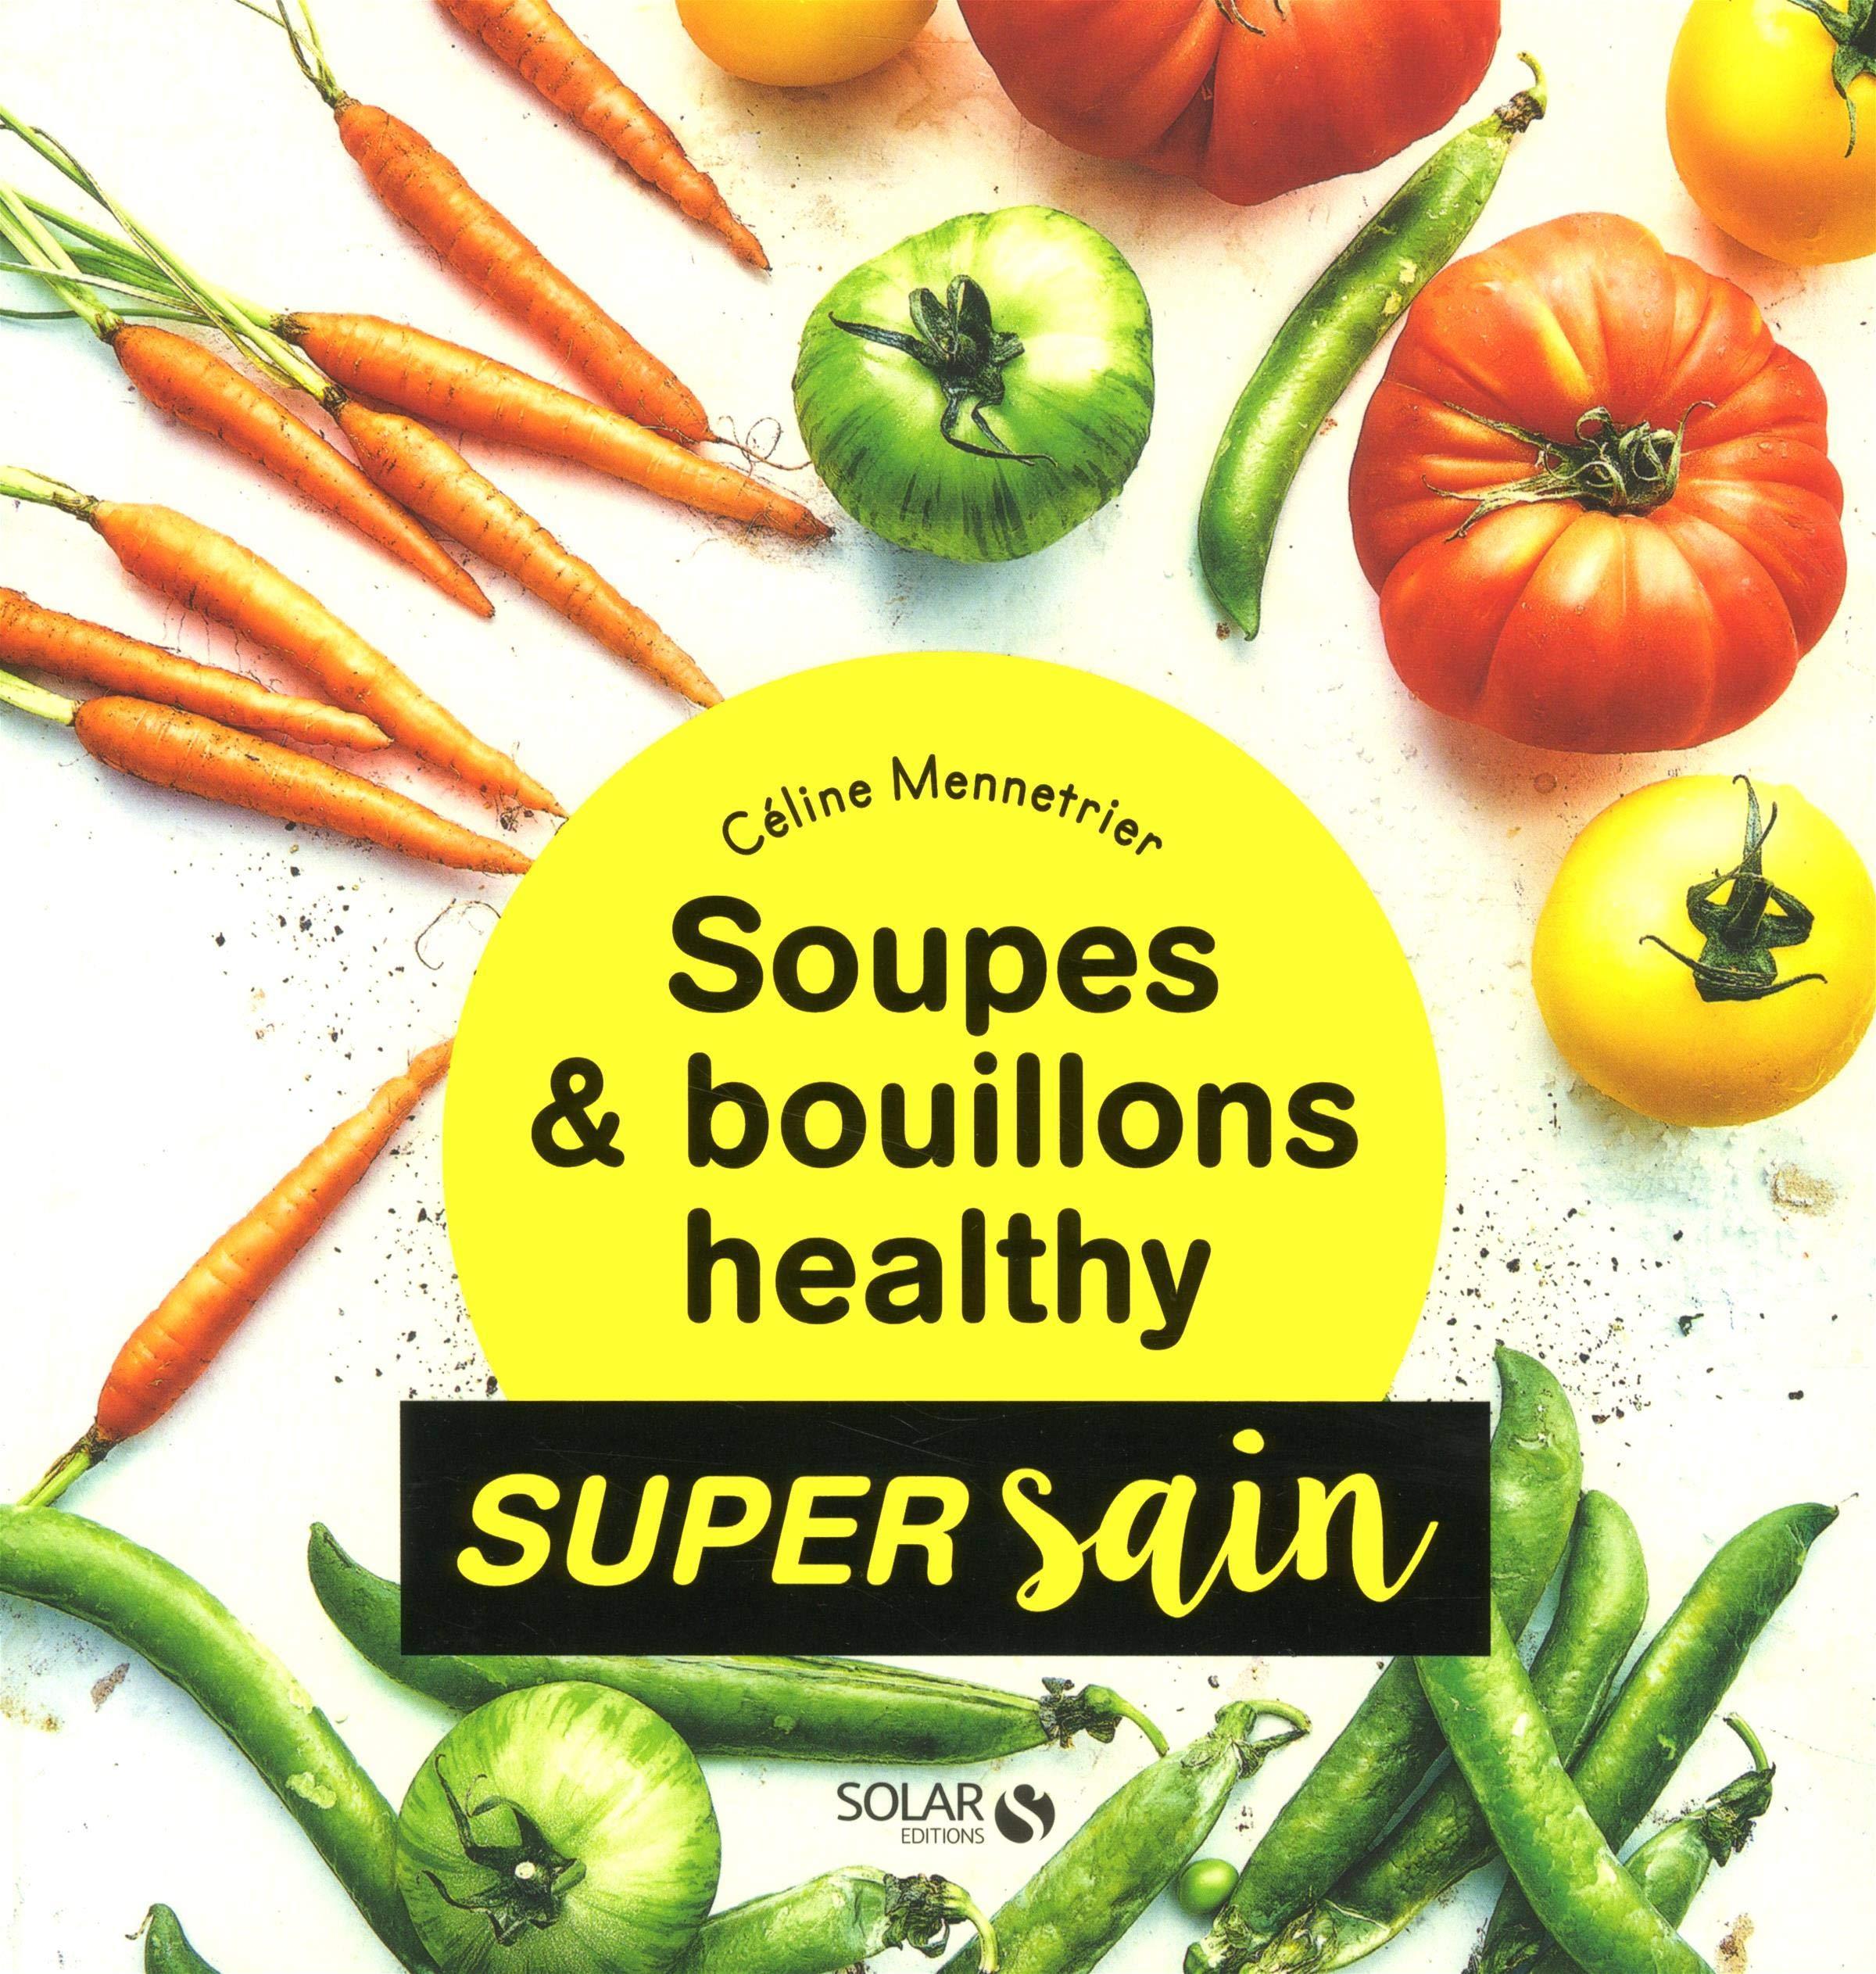 troc de troc " soupes & bouillons healthy - super sain " céline mennetrier image 0